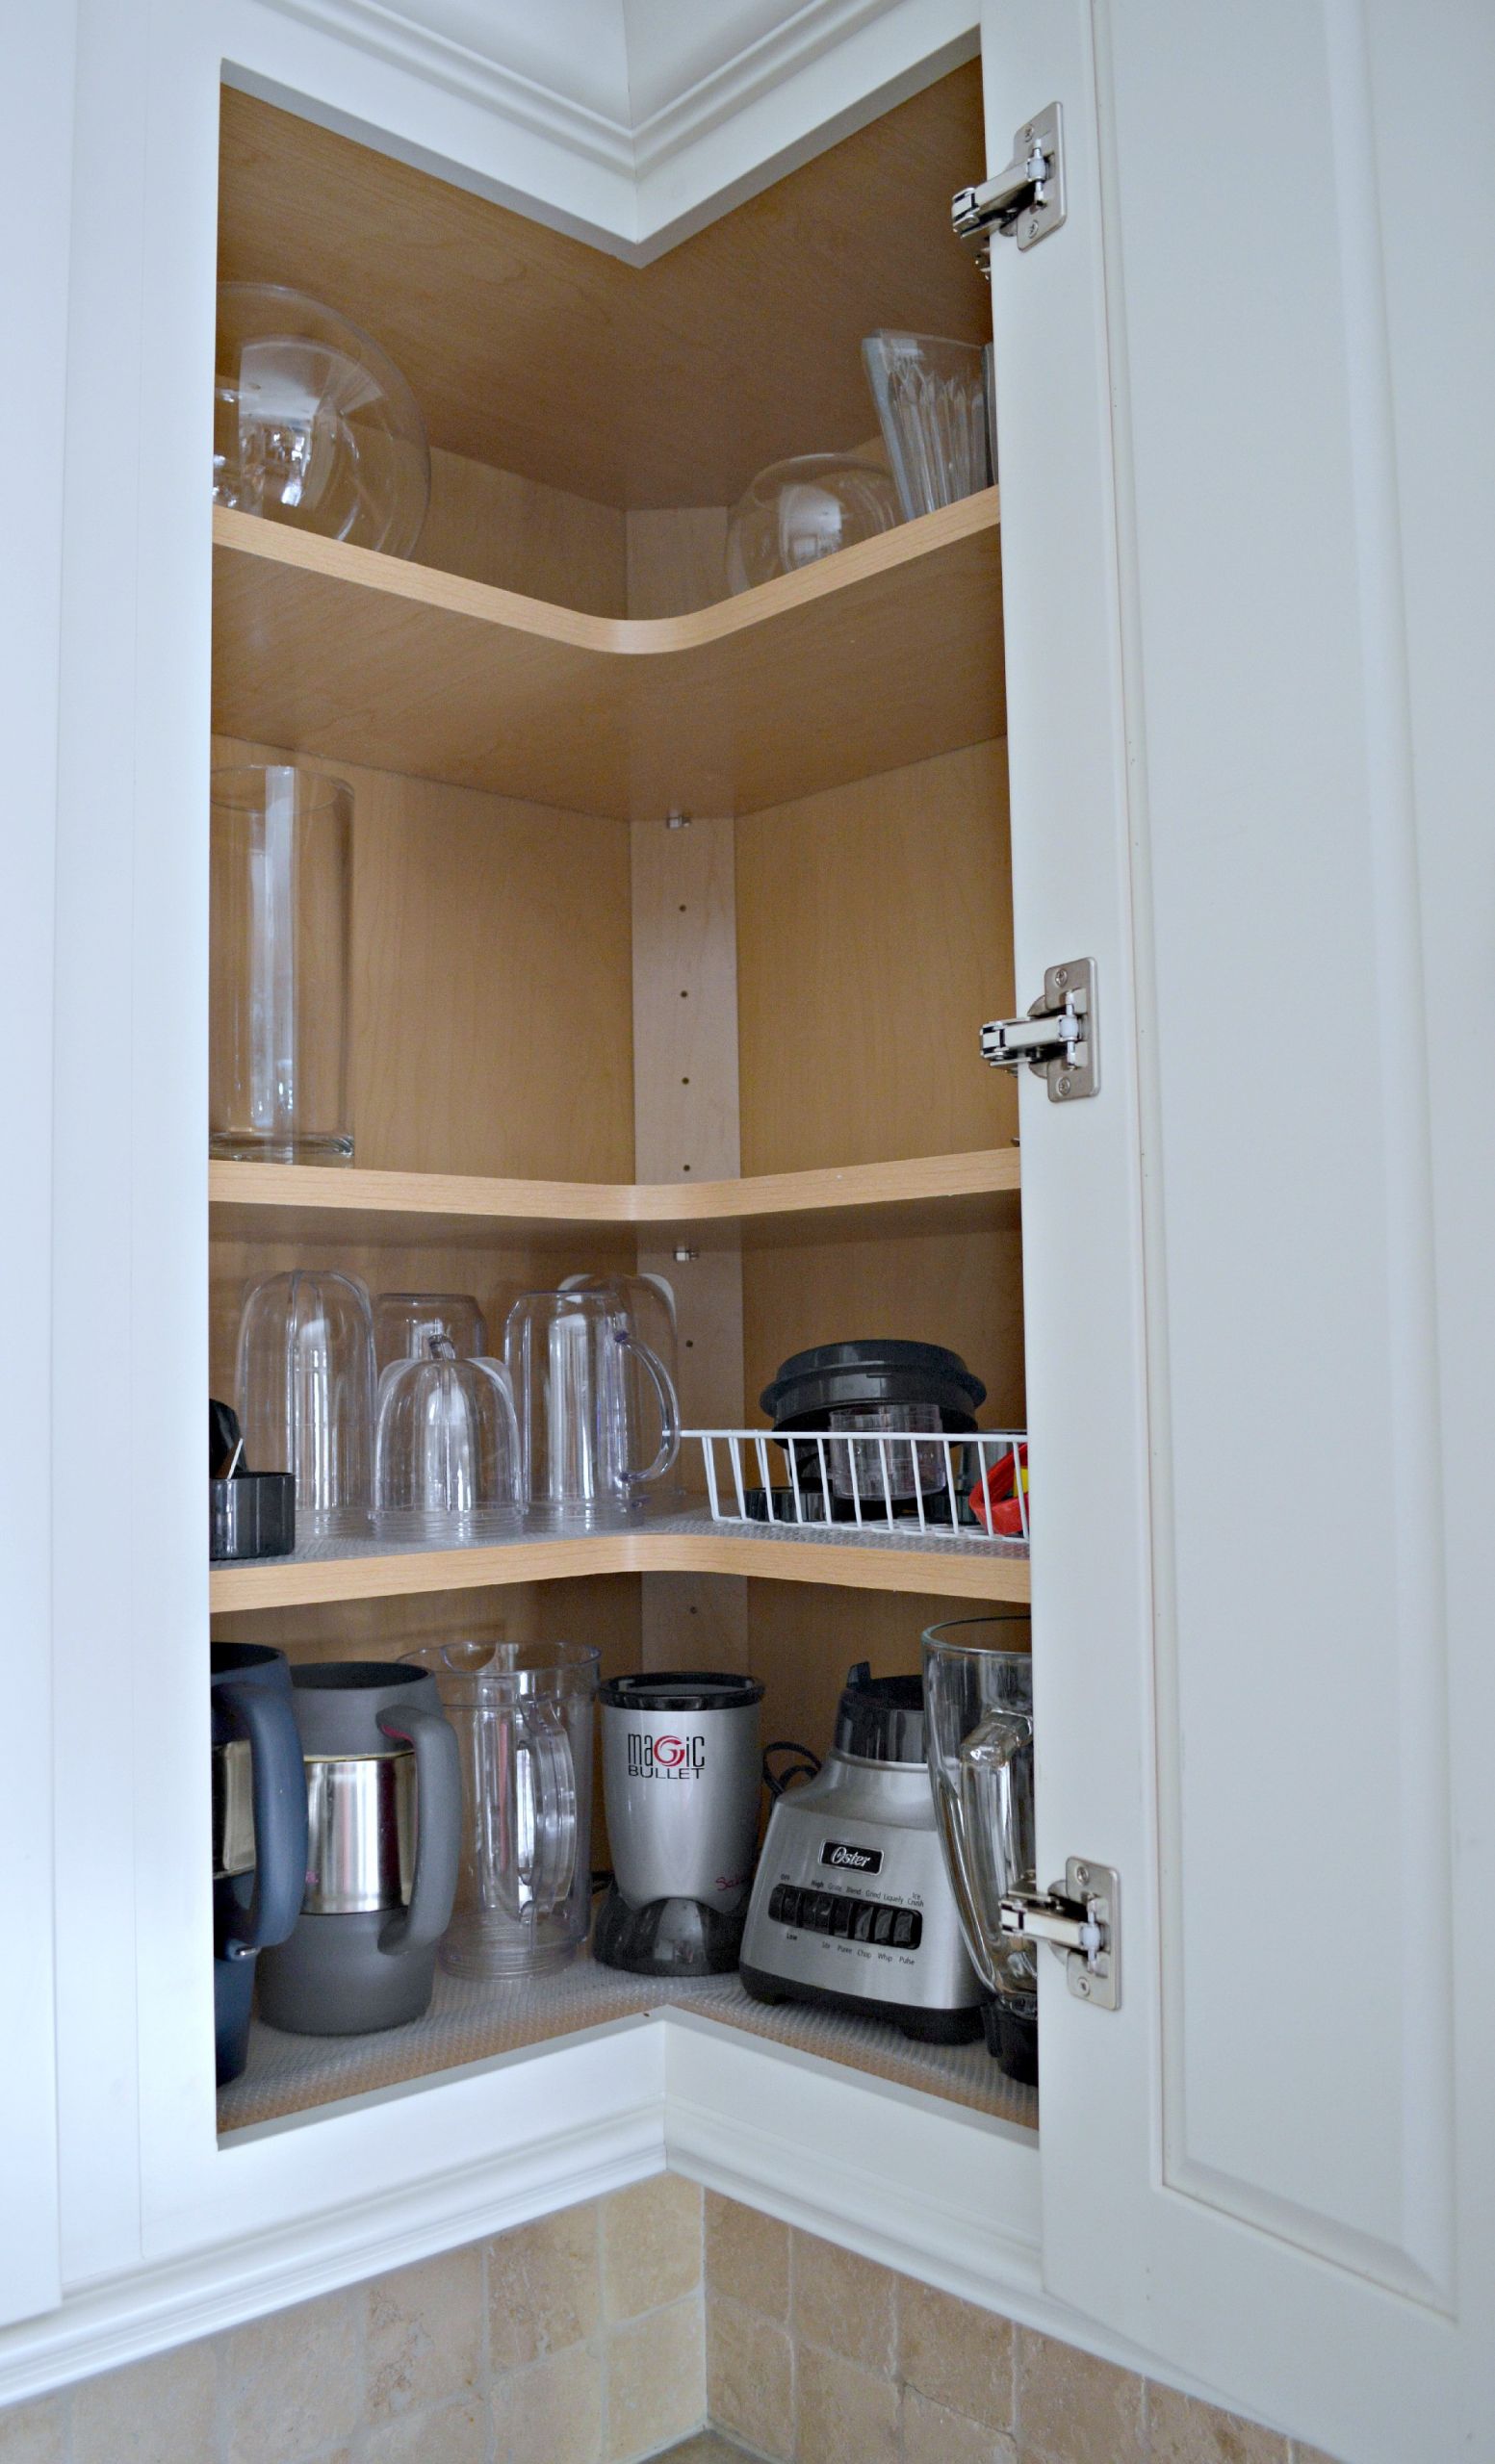 Corner Kitchen Cabinet organization New Tips for Designing An organized Kitchen